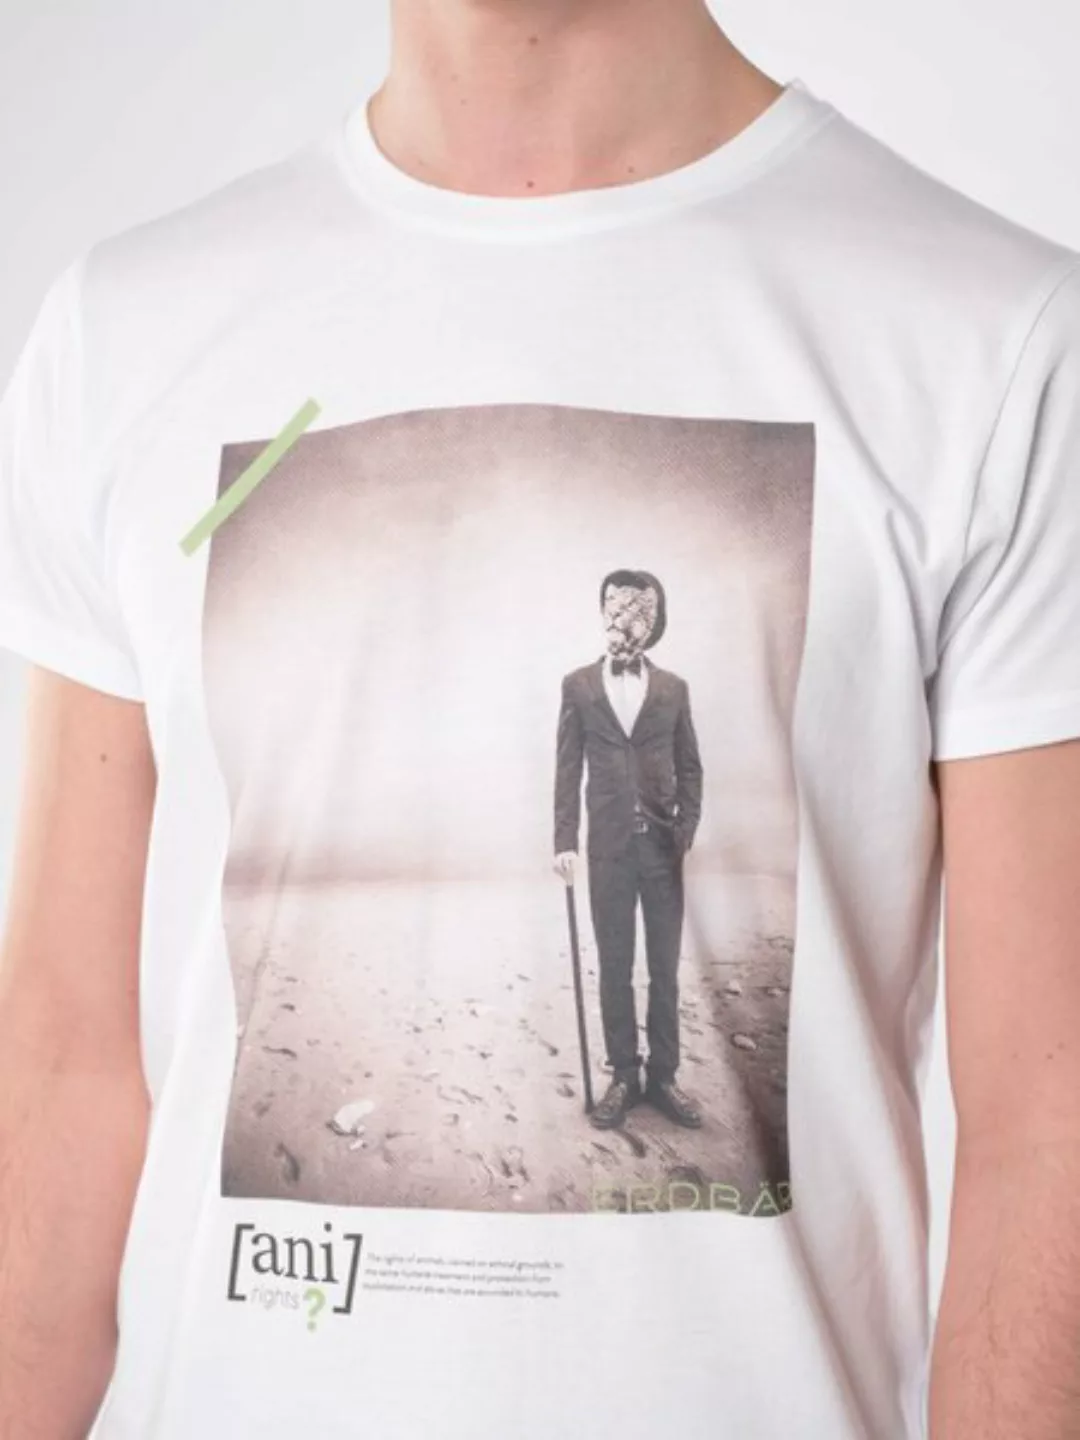 With This Style You Support! - Animal Revolution 06 / Herren T-shirt günstig online kaufen